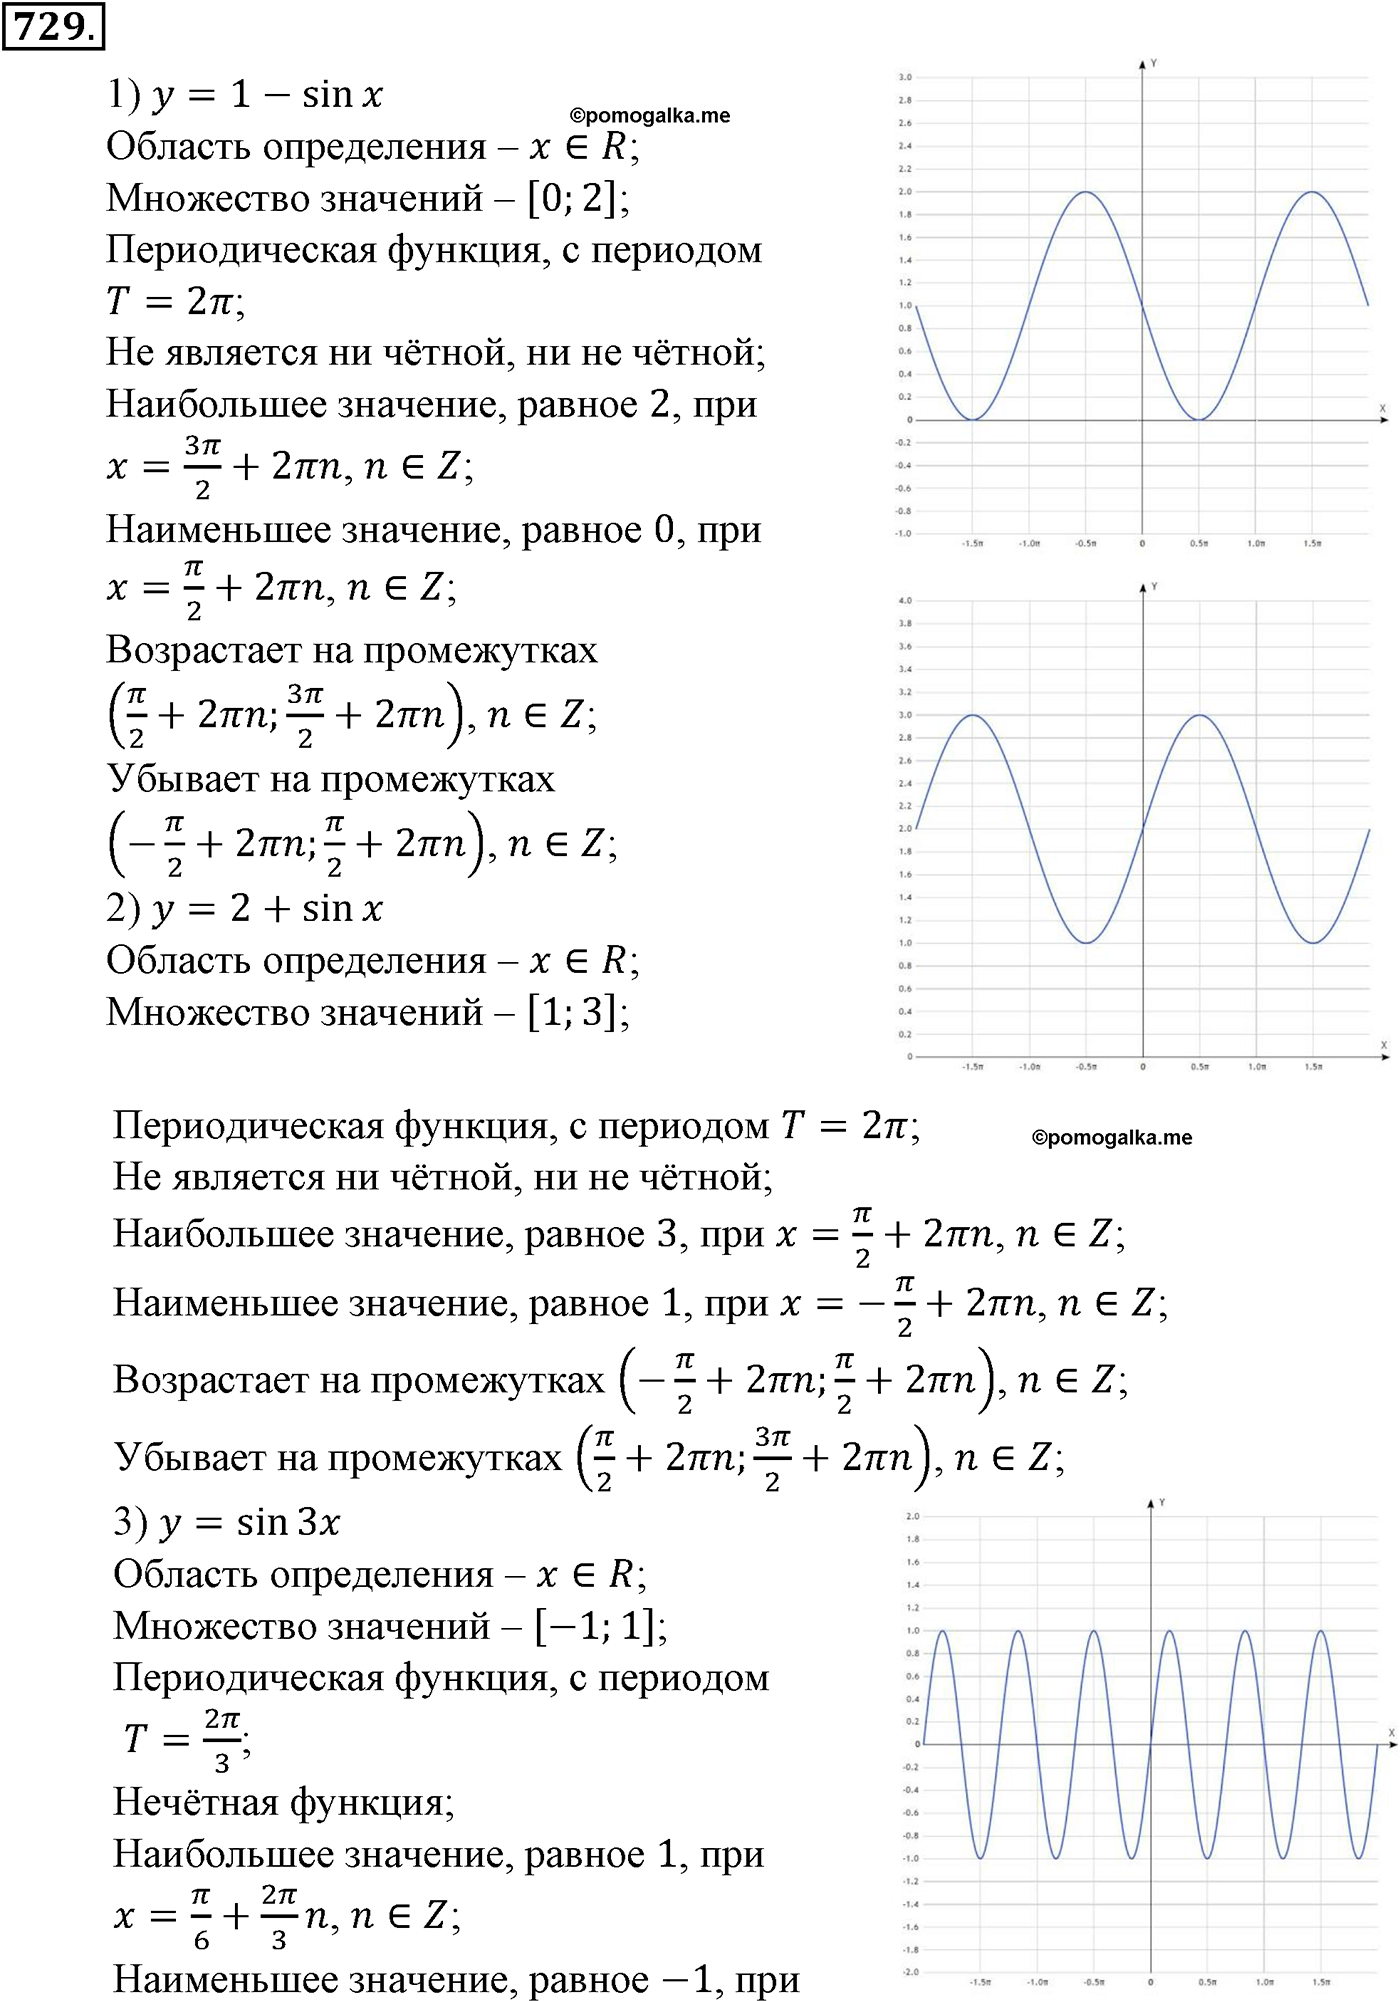 разбор задачи №729 по алгебре за 10-11 класс из учебника Алимова, Колягина